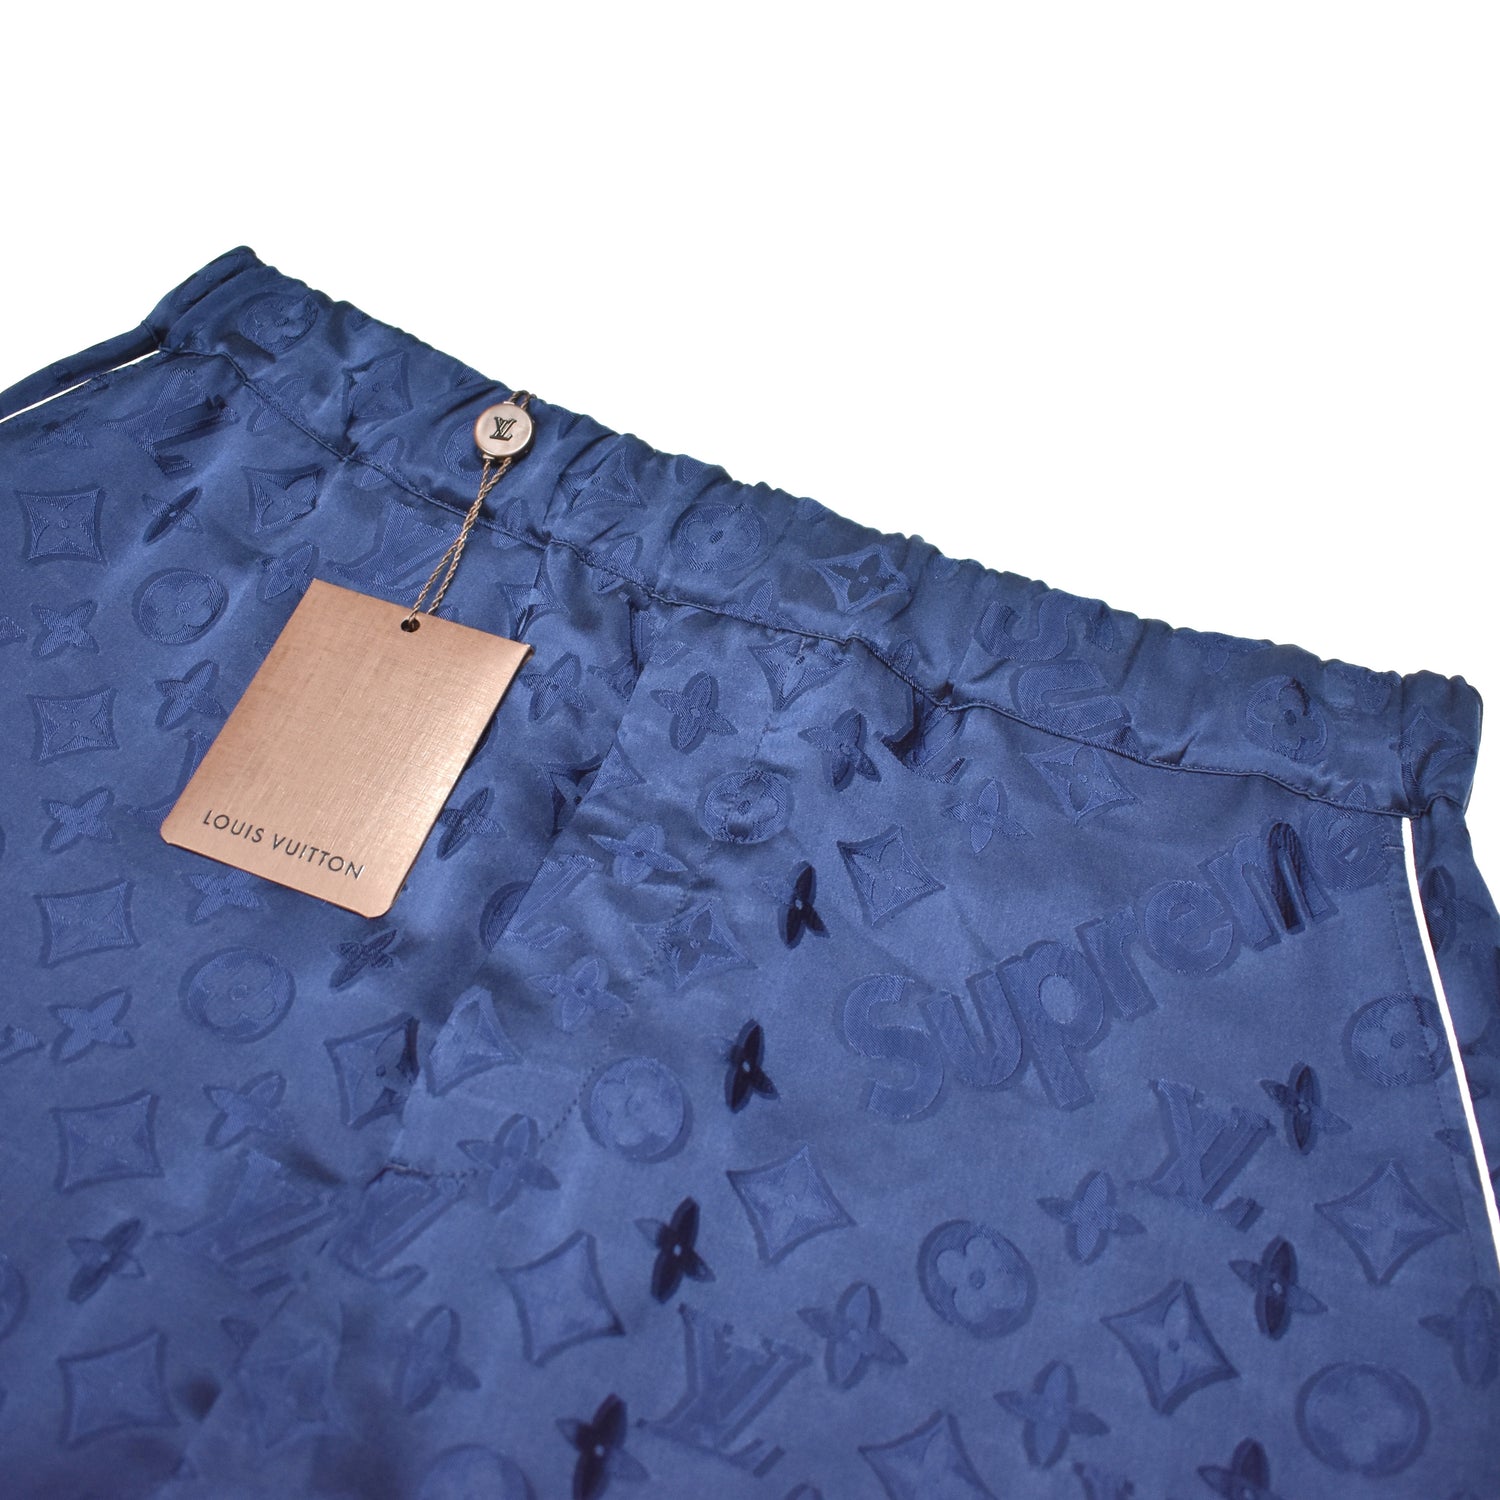 Louis Vuitton Signature Swim Board Shorts Blue France. Size M0